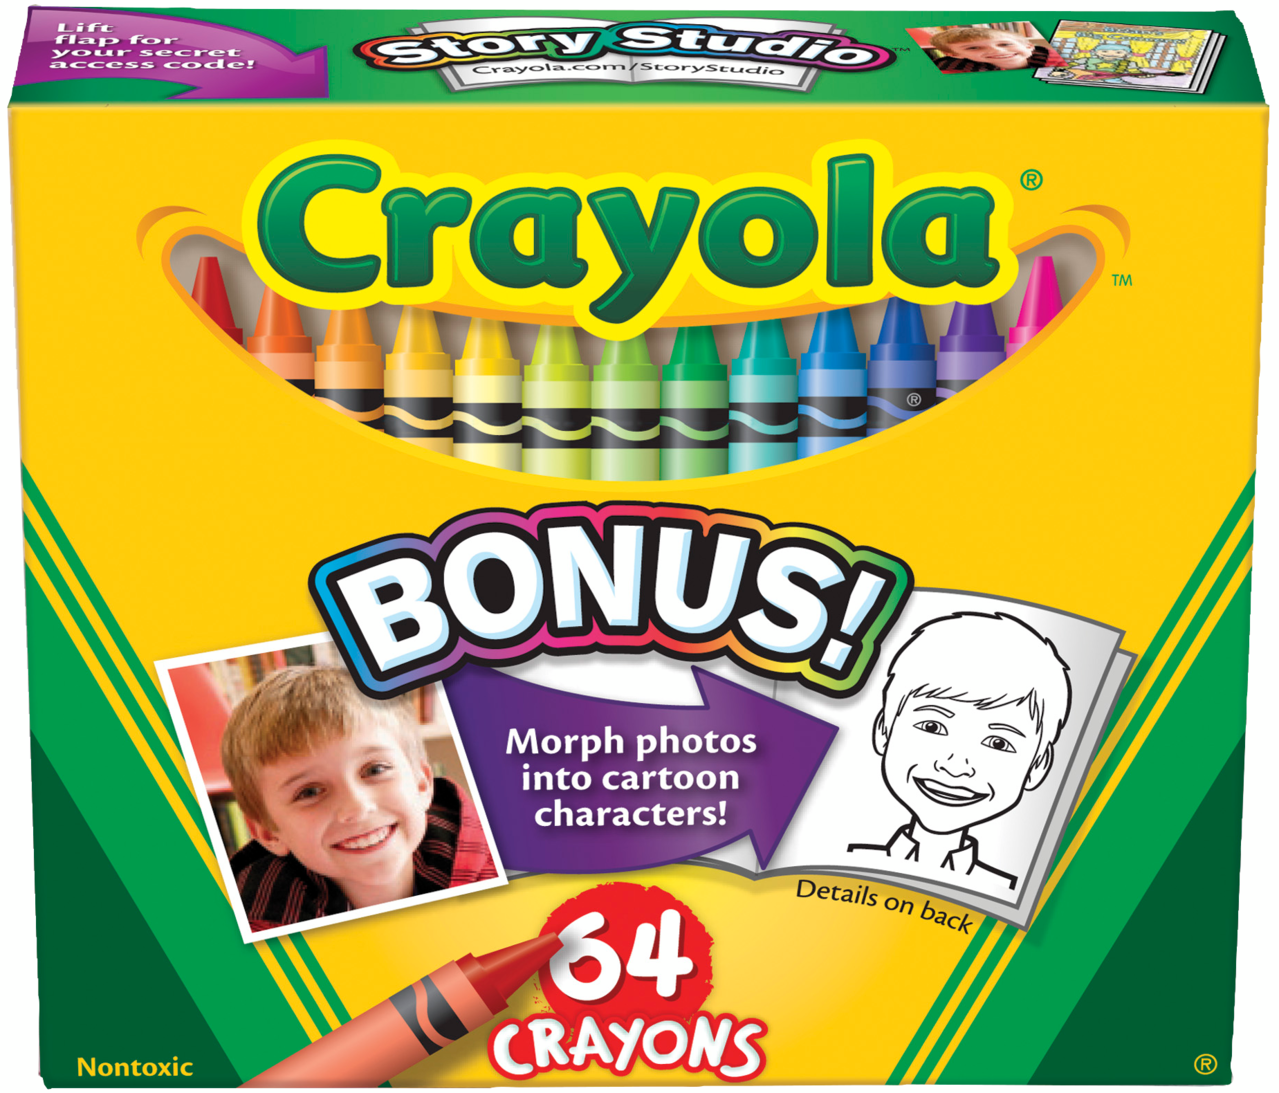 Crayola Crayons 64 Count Box